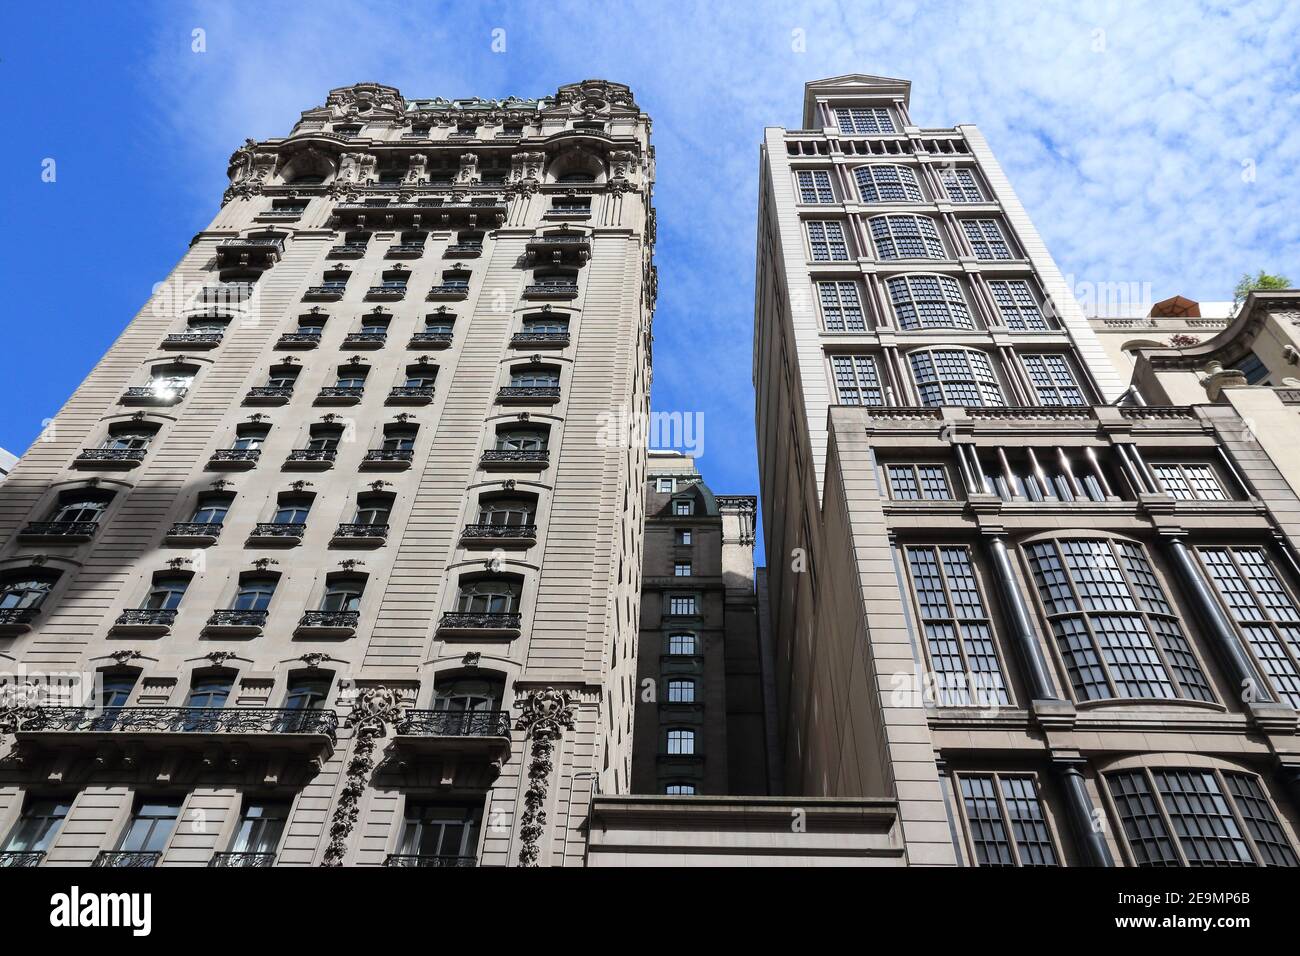 NEW YORK, USA - 2. JULI 2013: Skyline der Fifth Avenue in New York. 5th Avenue ist eine der teuersten Immobiliengebiete der Welt. Stockfoto